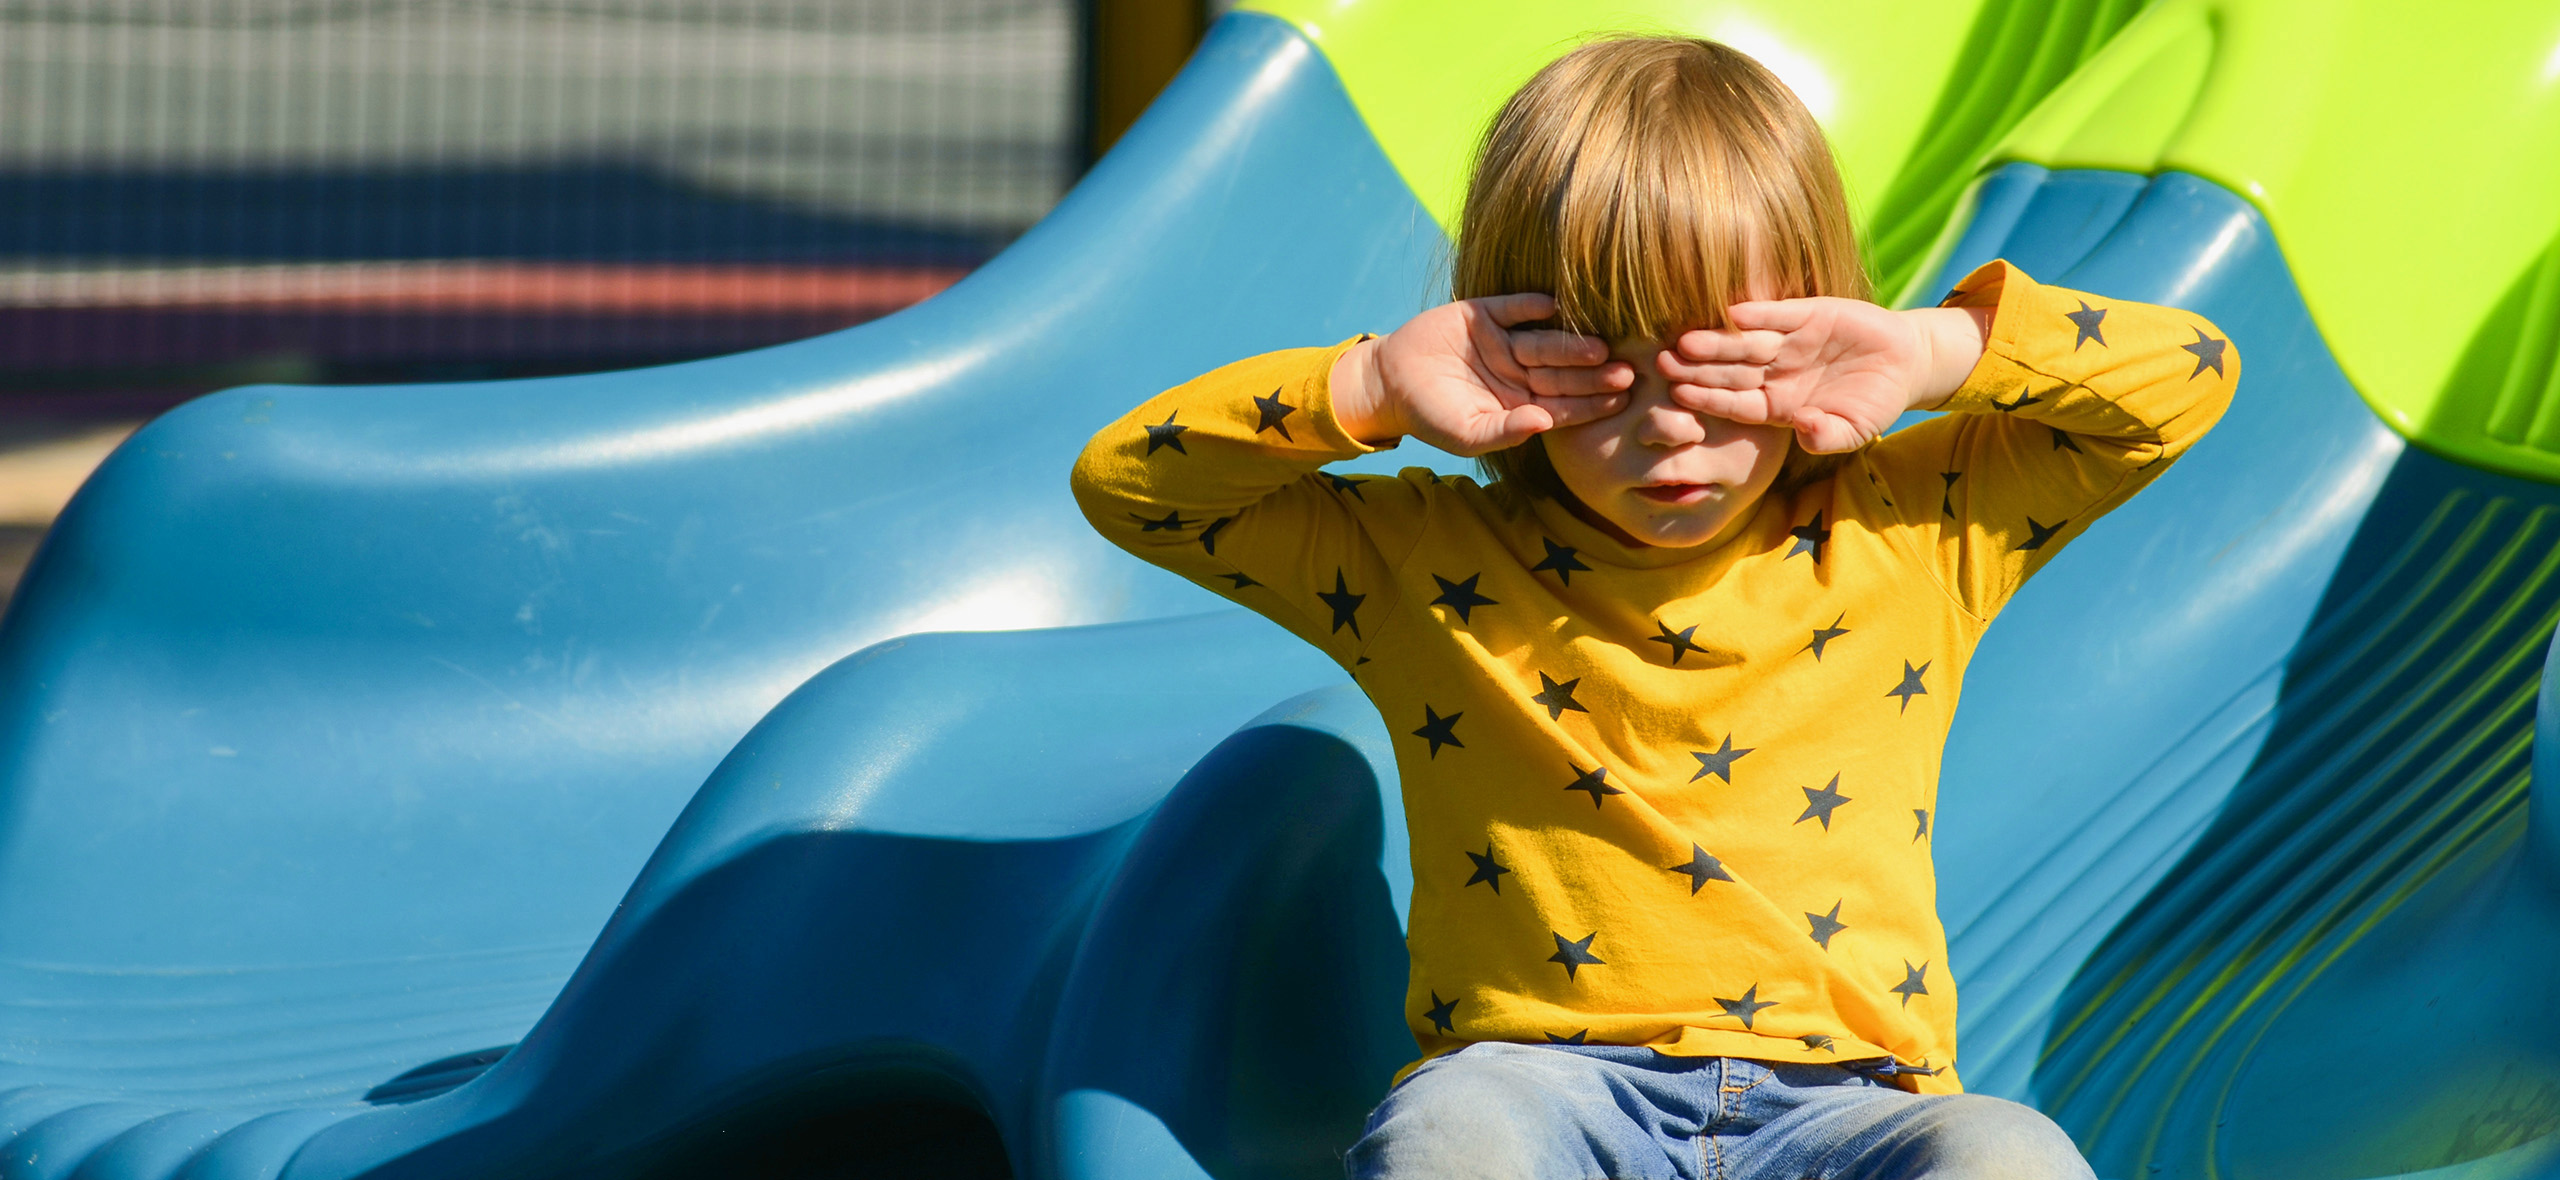 Не спит и дерется: 4 проблемы, которые часто возникают в детском саду